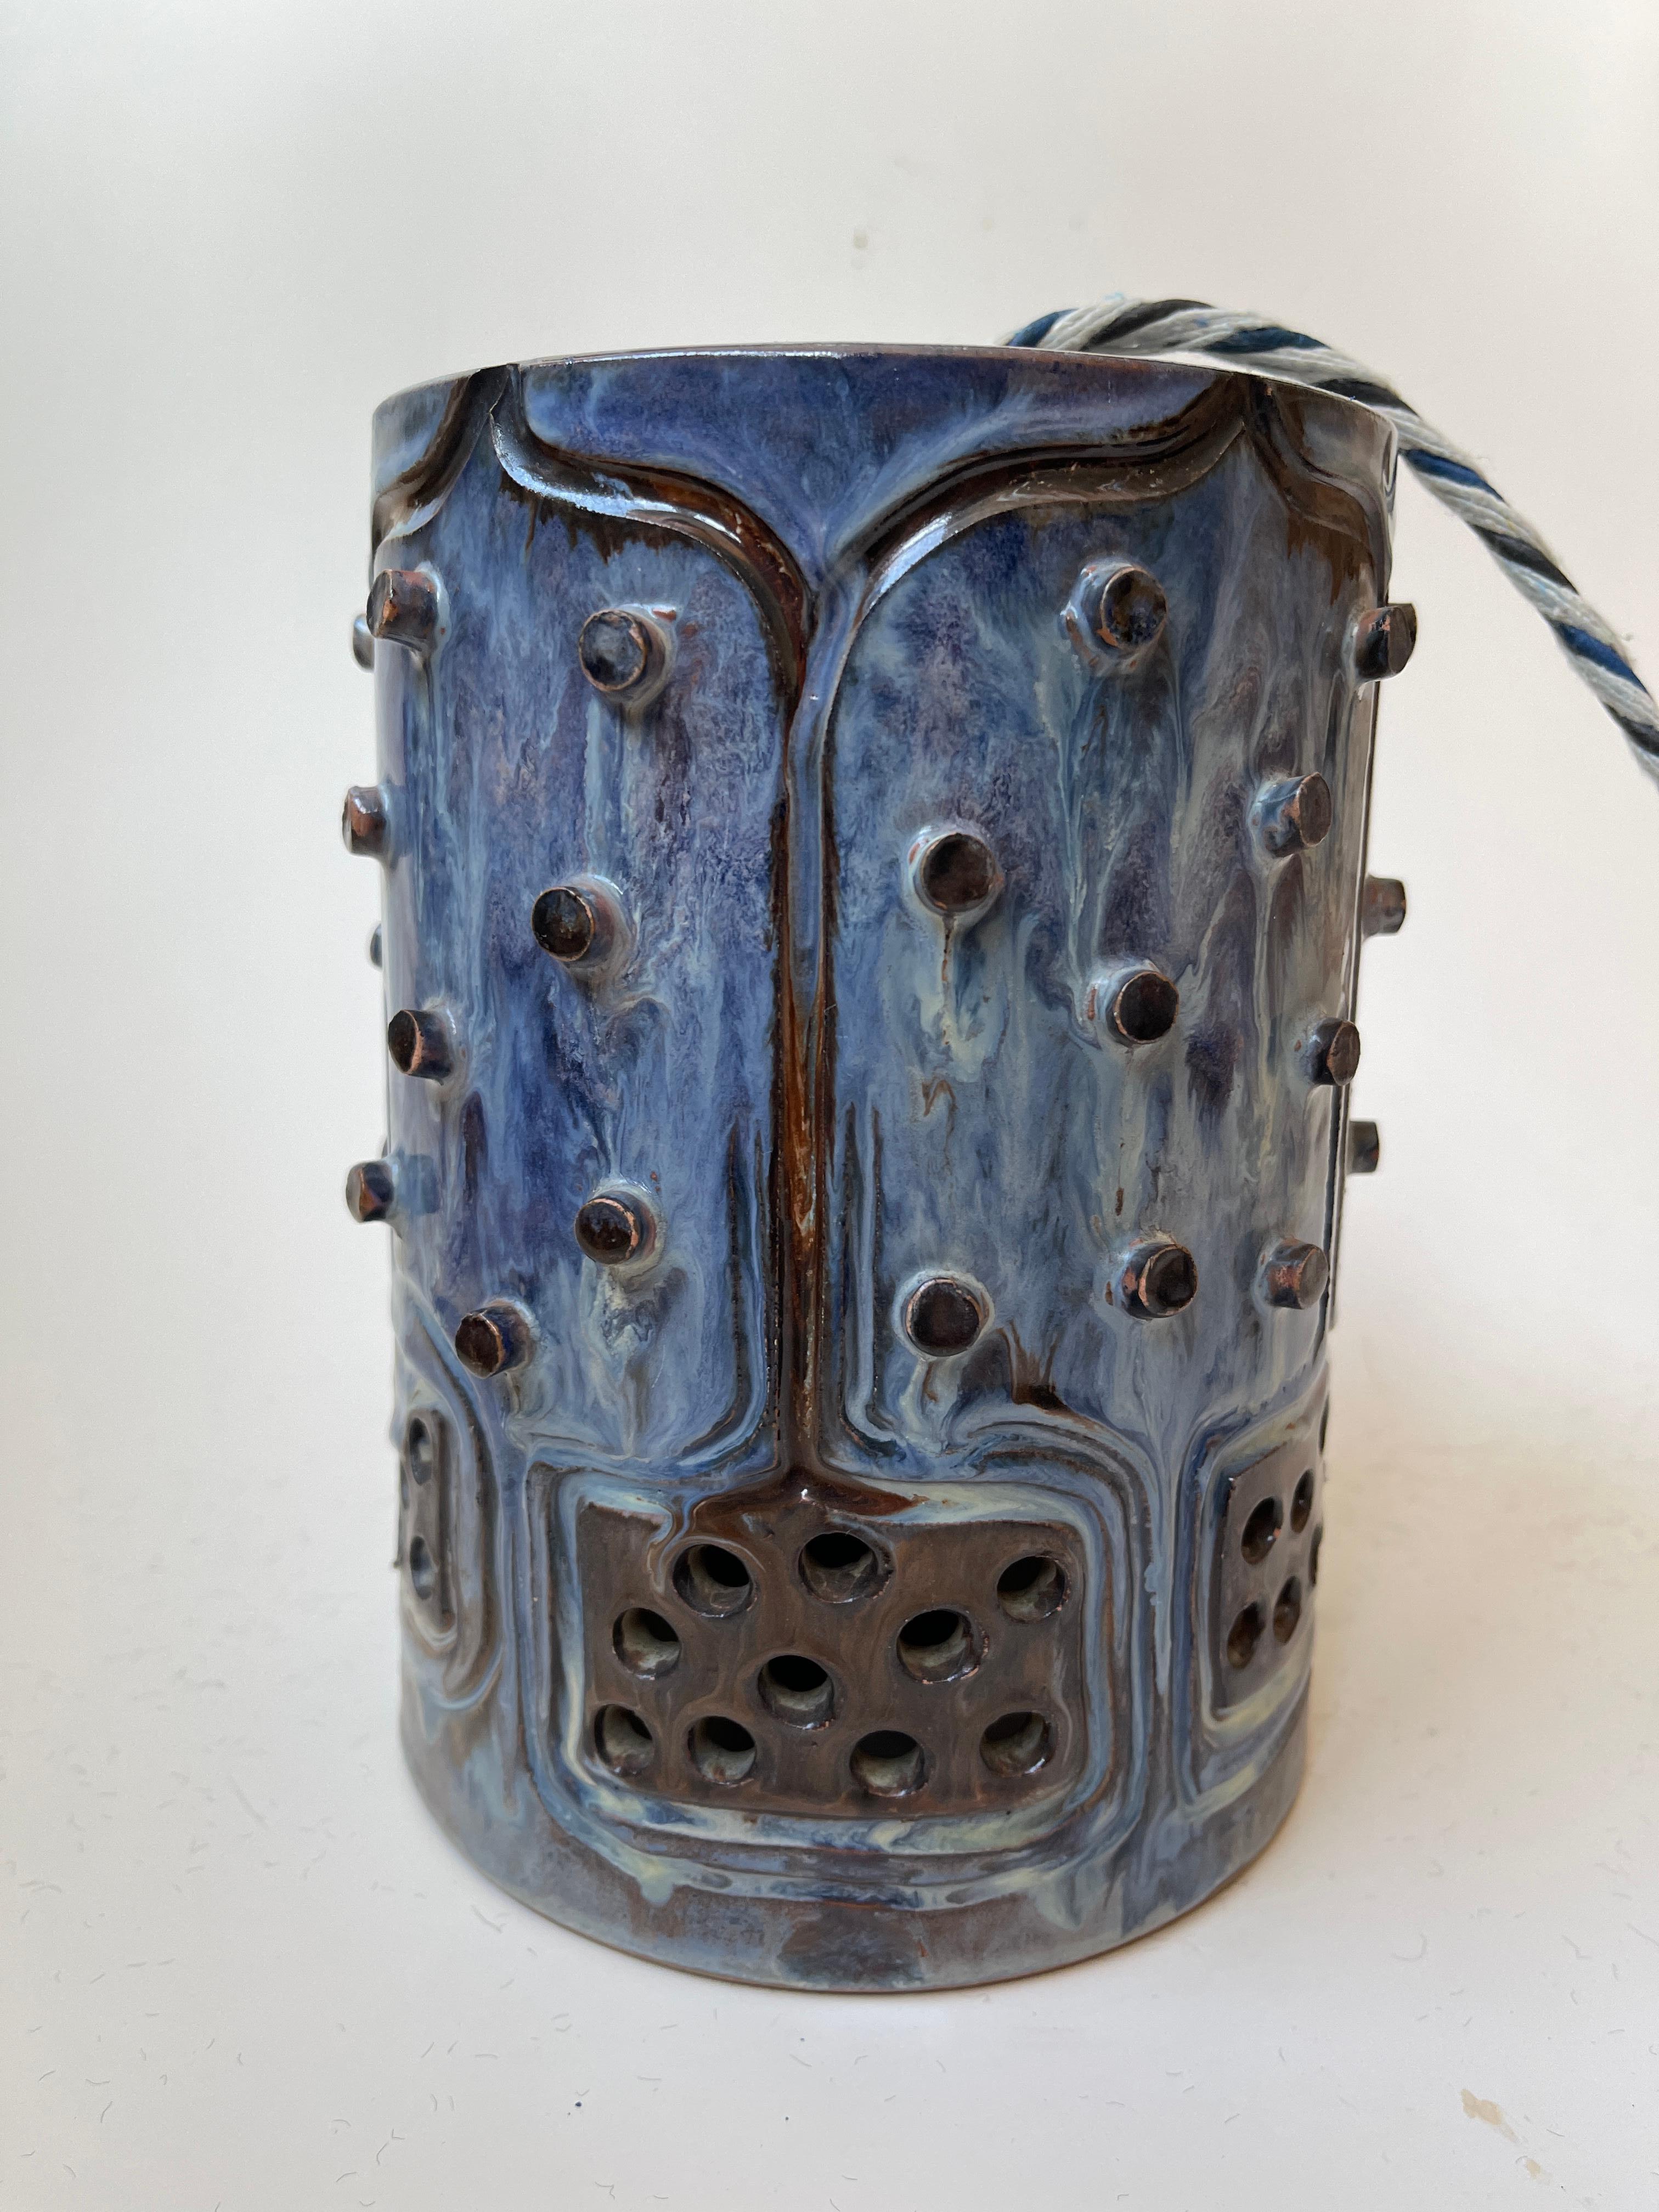 Lustre brutaliste danois en grès, fabriqué à la main par Jette Hellerøe. Le grès est dans les tons de bleu et de brun, et présente une belle texture cloutée et des découpes ouvertes pour permettre à la lumière de filtrer à travers la lanterne